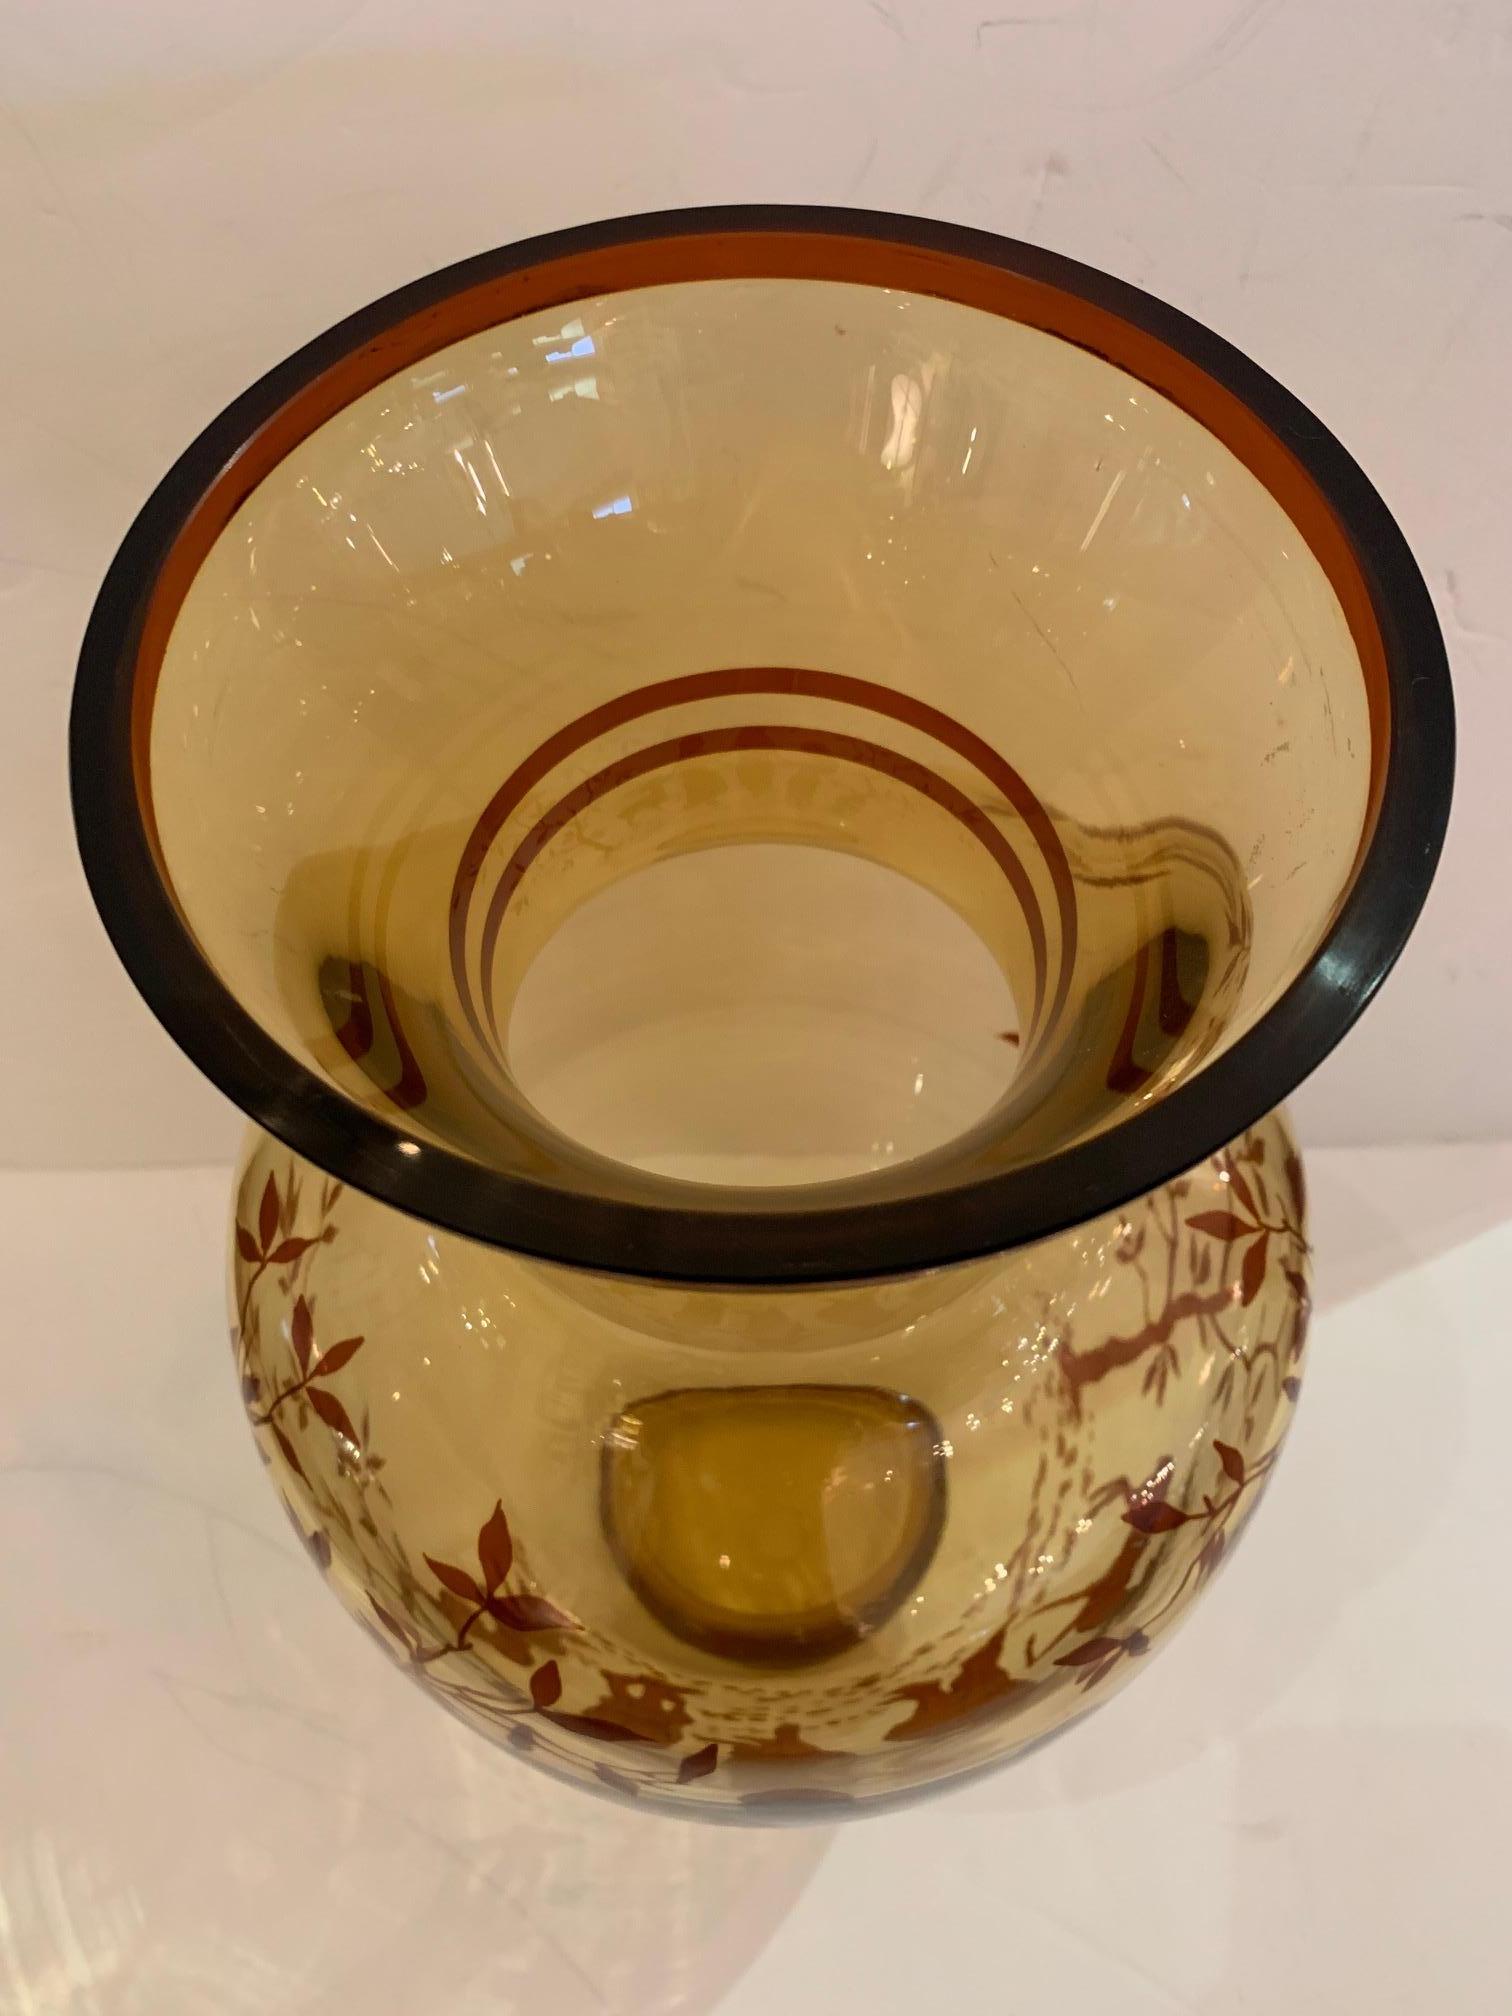 Un grand vase vintage en verre ambré qui attire le regard, avec 3 nymphes, un cerf et un serpent magnifiquement peints à la main.
Ouverture de 7